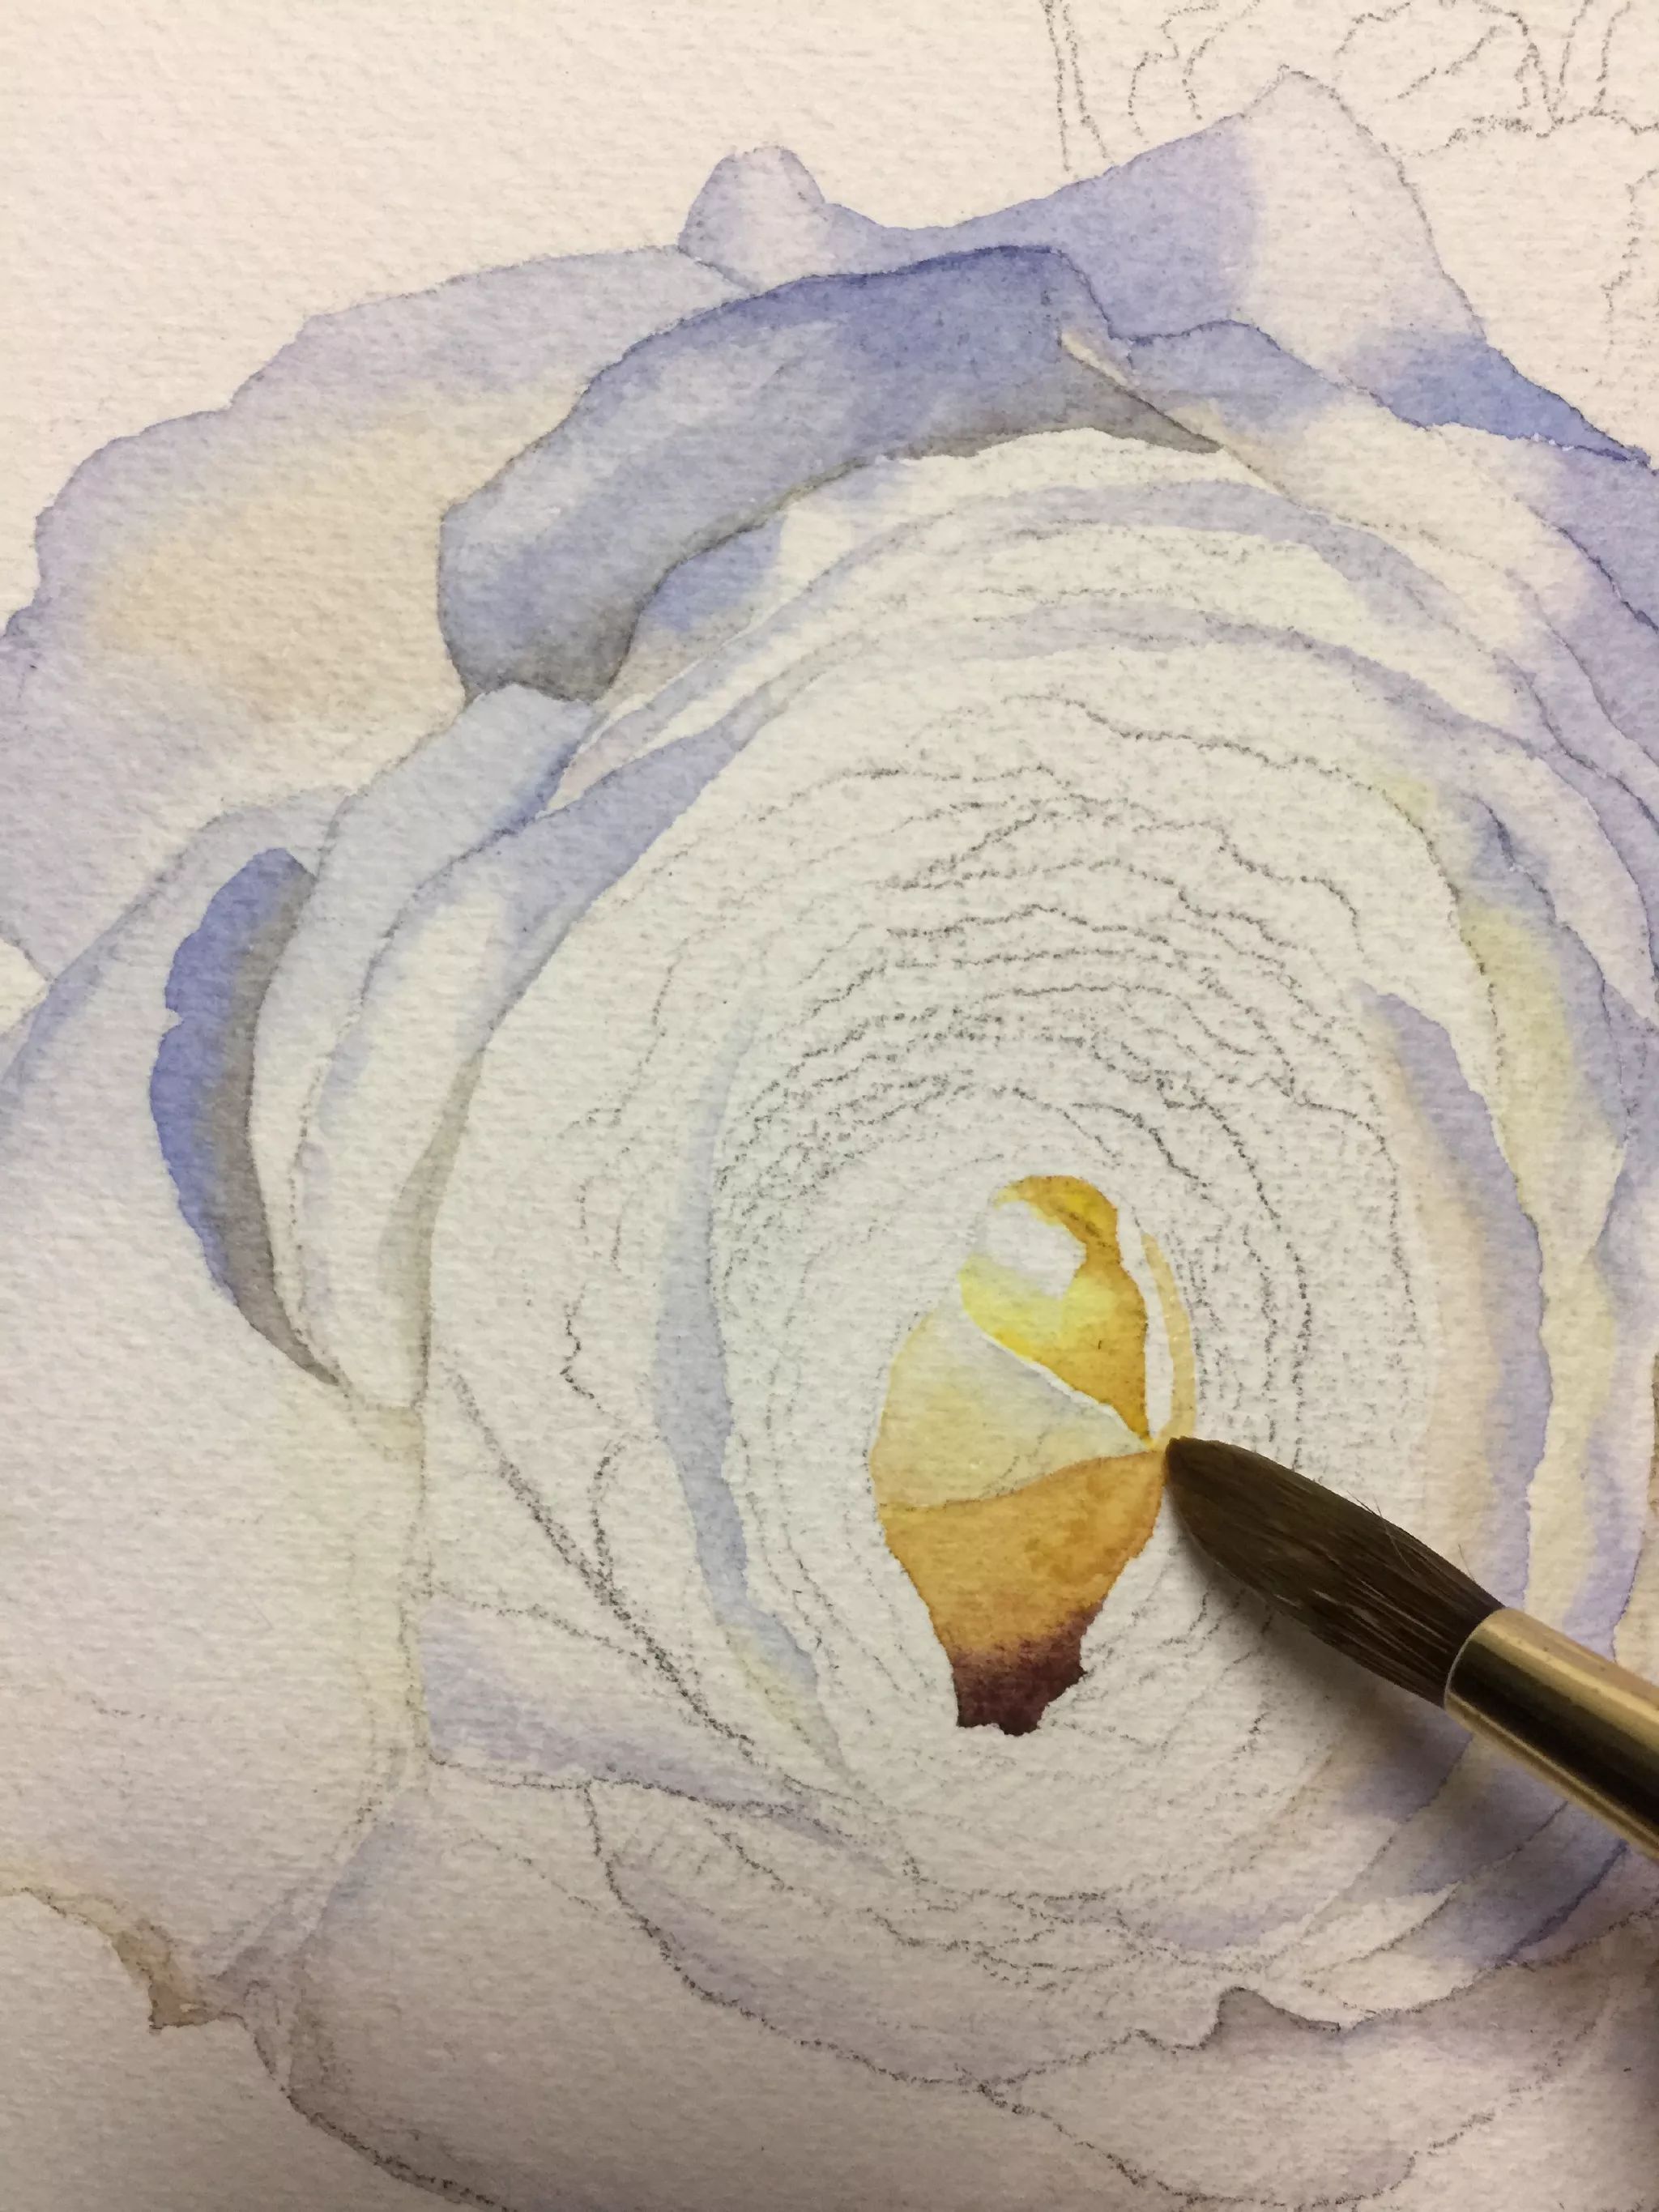 水彩画白玫瑰步骤教程